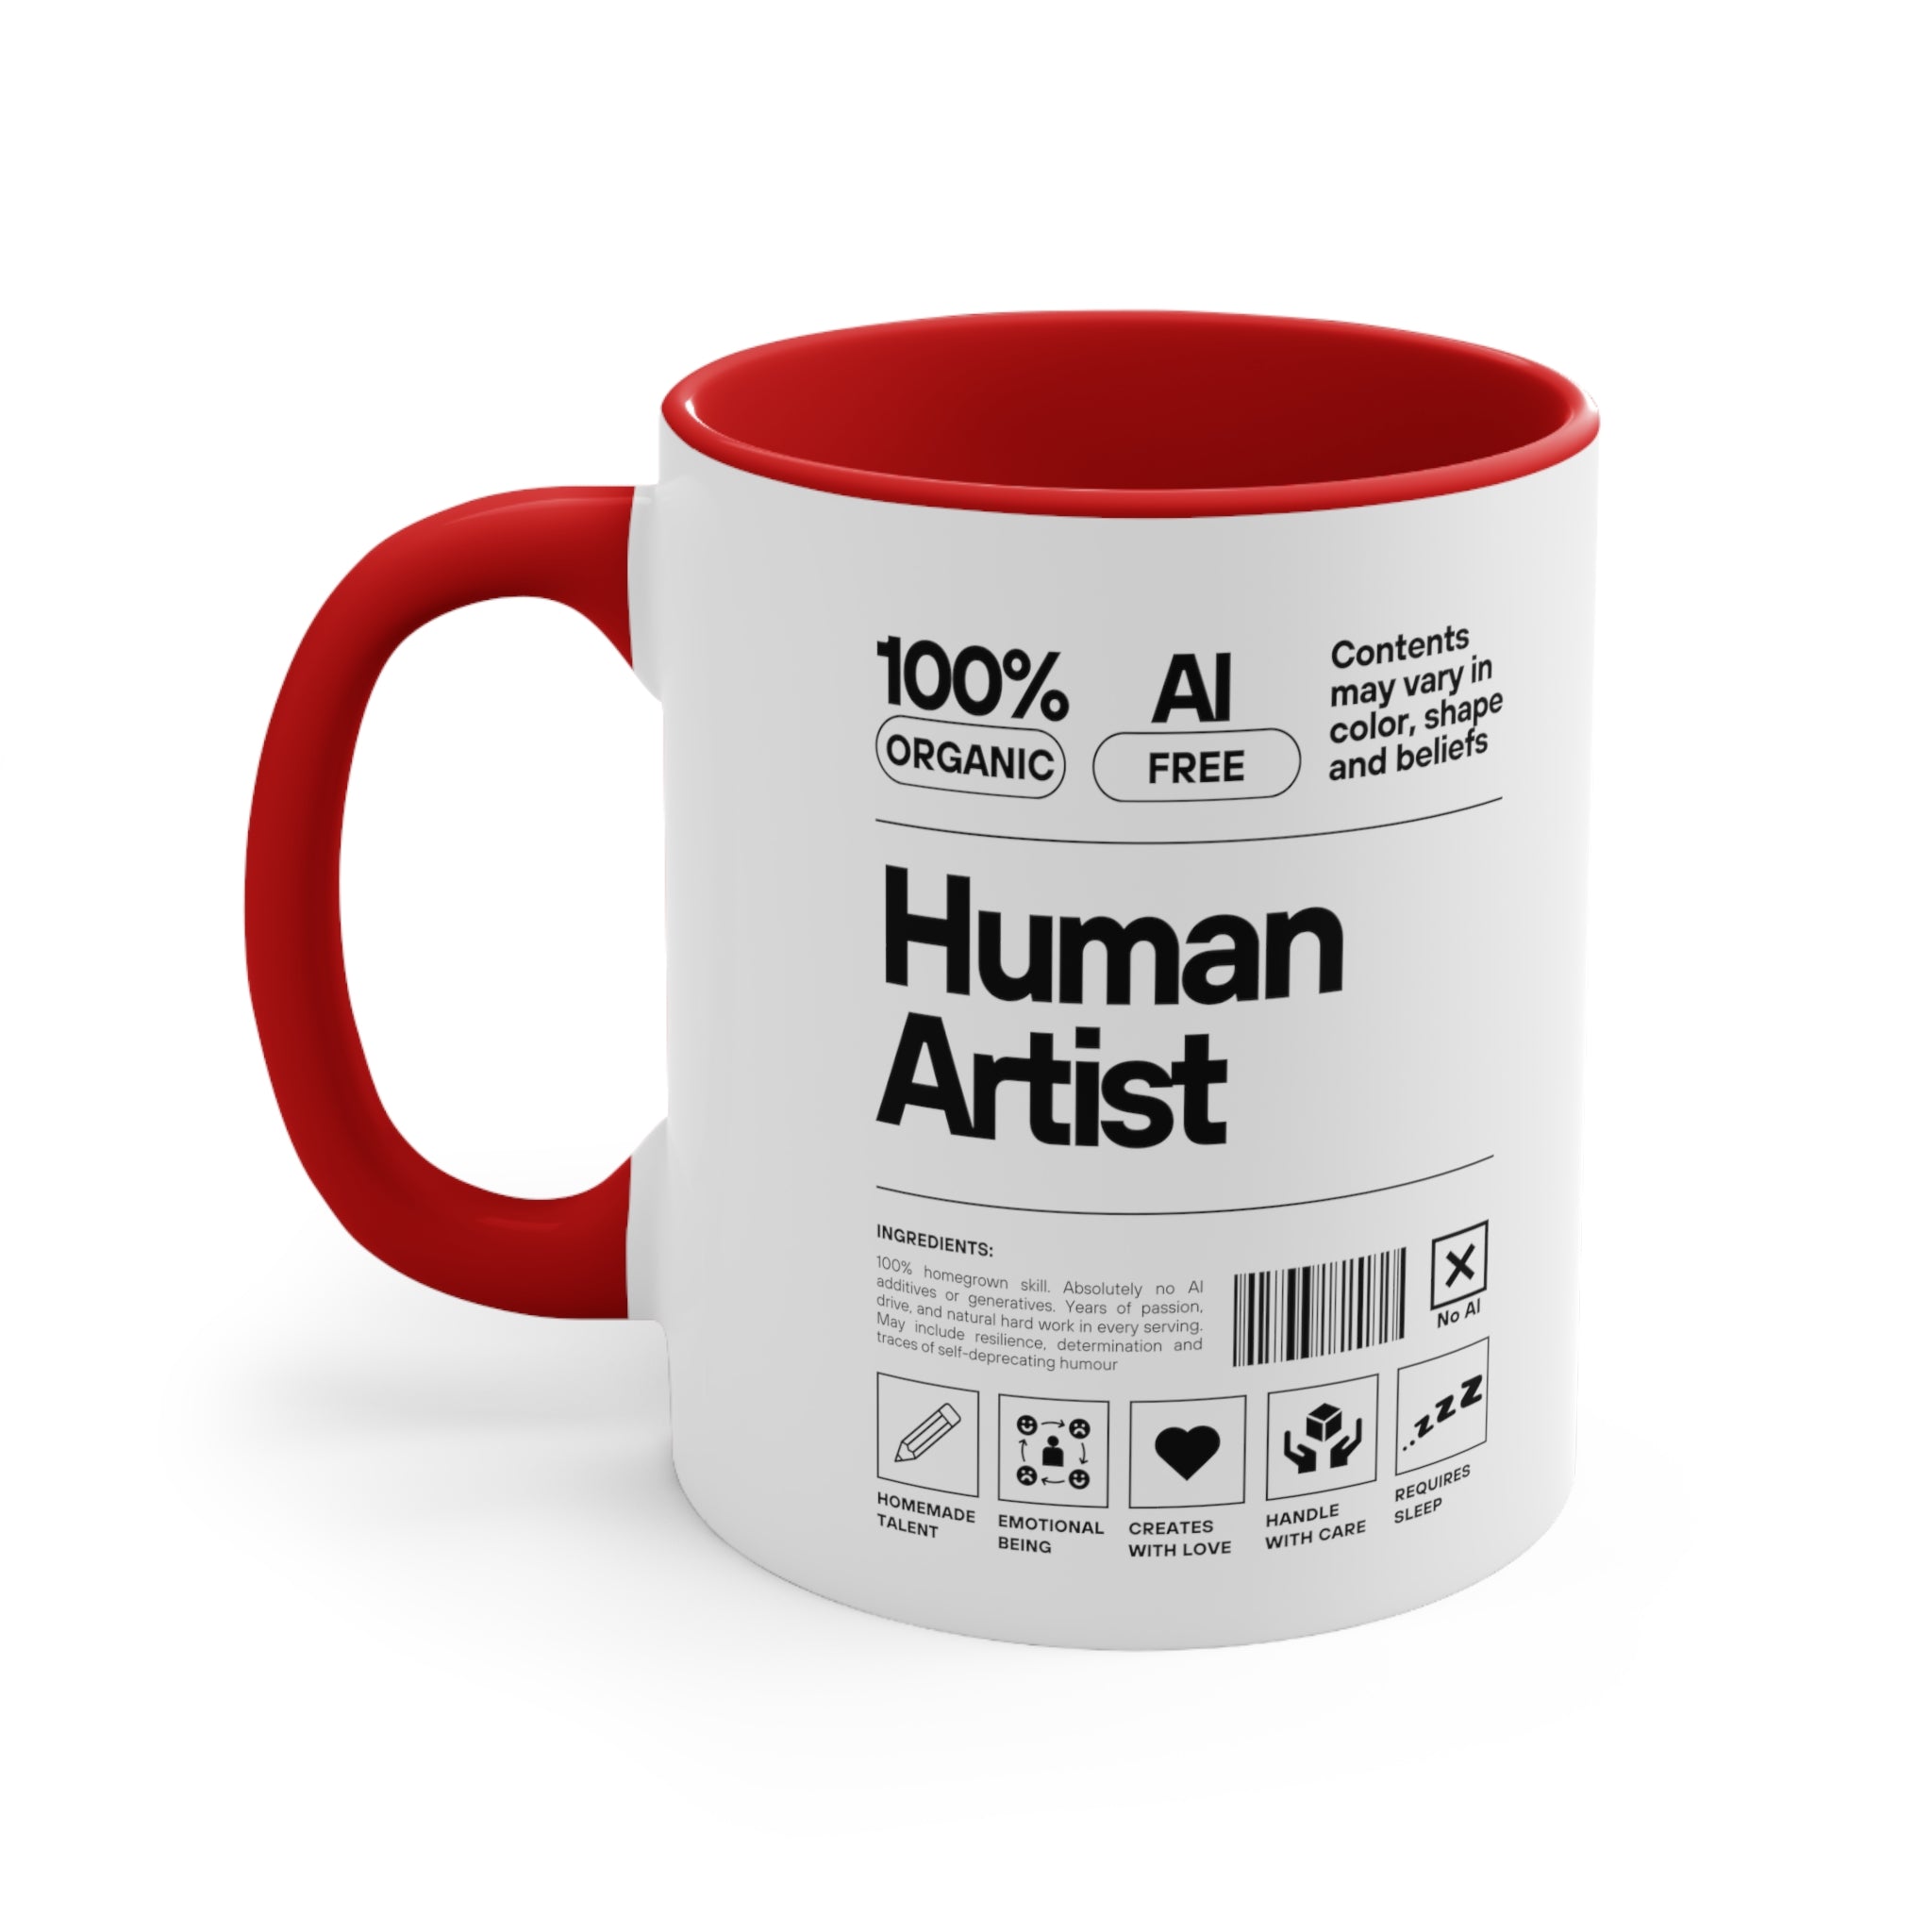 Human Artist Mug